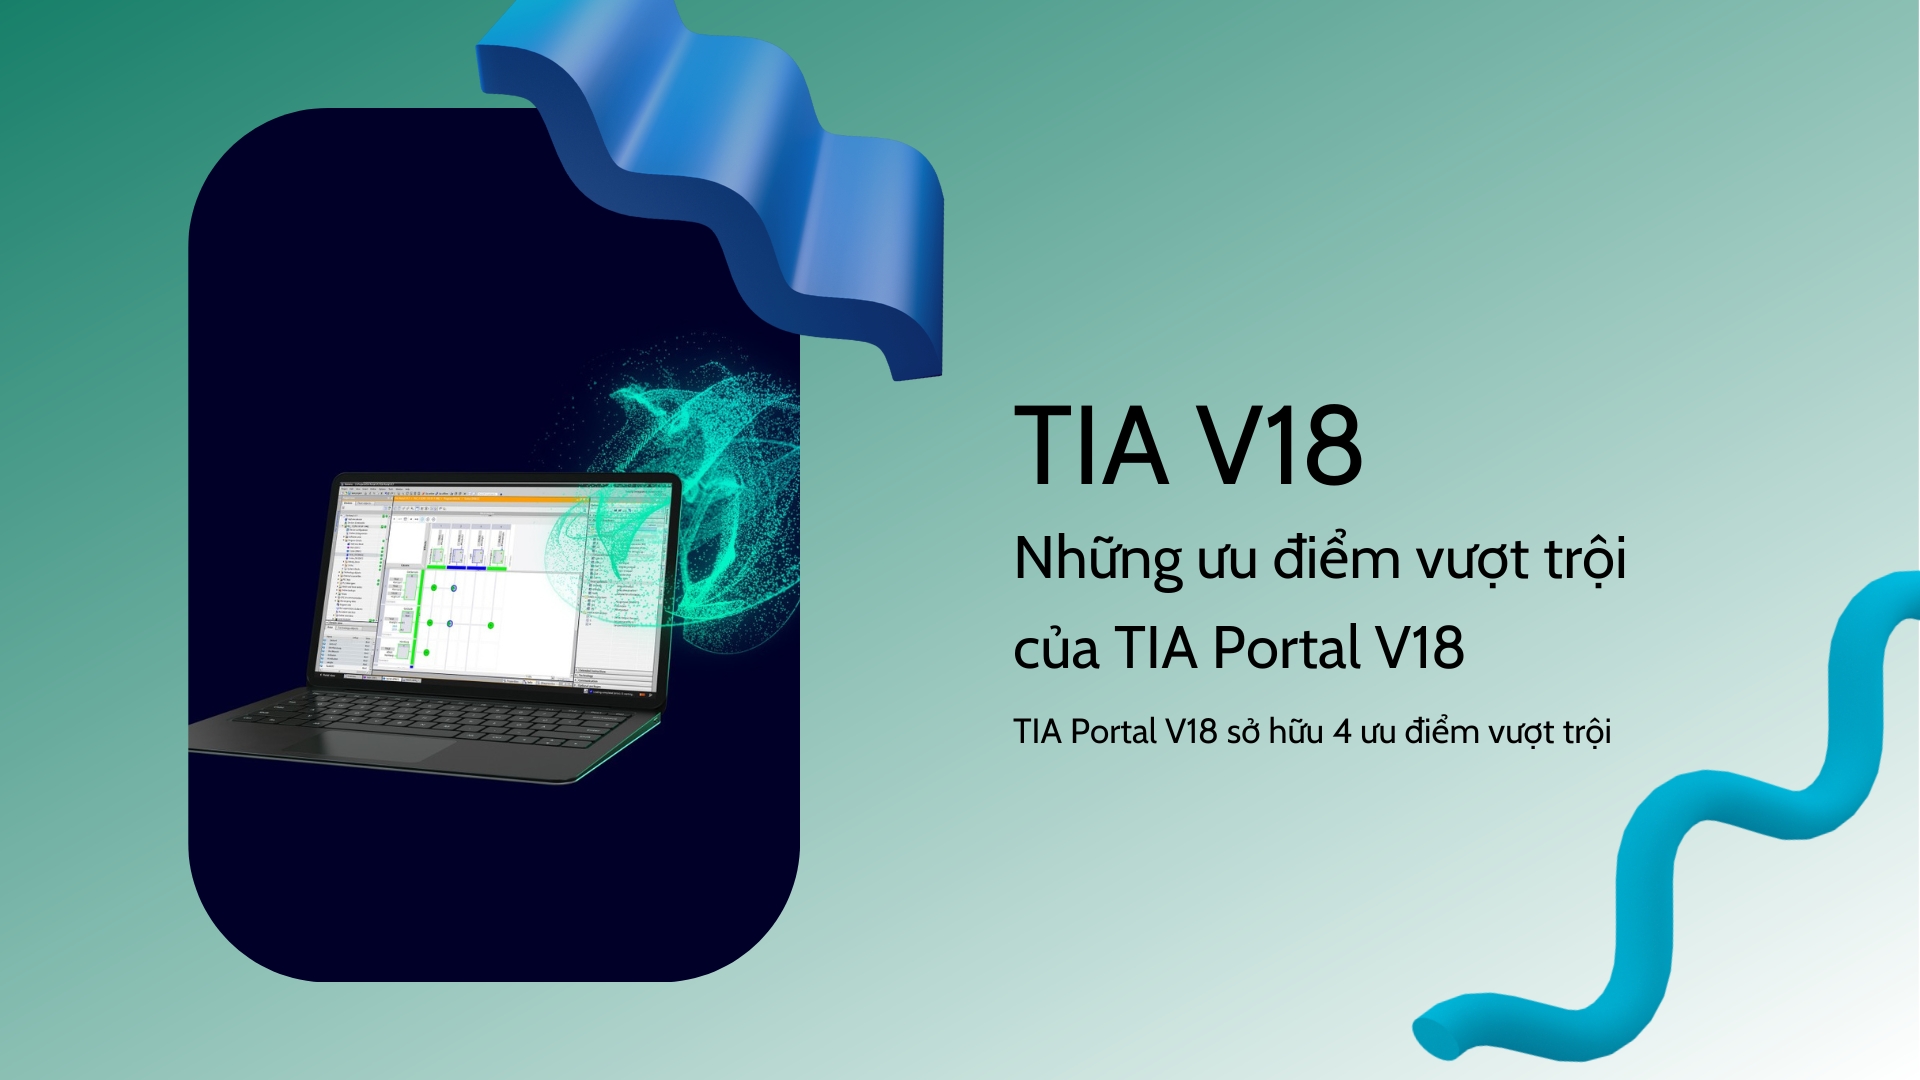 TIA Portal V18 sở hữu 4 ưu điểm vượt trội